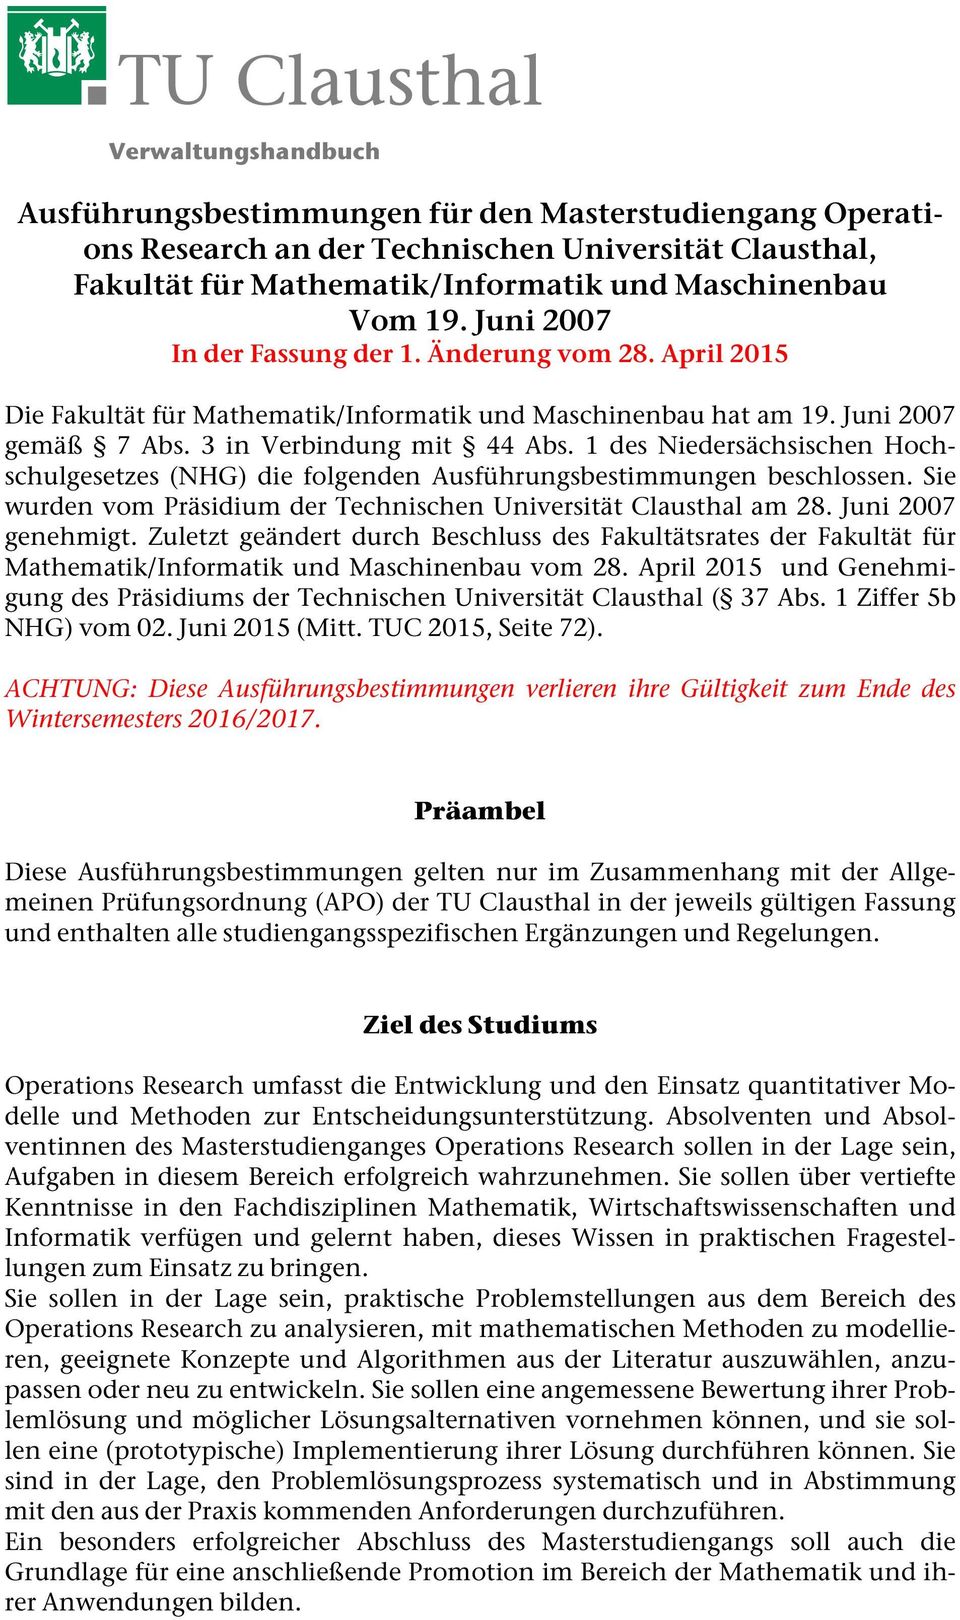 1 des Niedersächsischen Hochschulgesetzes (NHG) die folgenden Ausführungsbestimmungen beschlossen. Sie wurden vom Präsidium der Technischen Universität Clausthal am 28. Juni 2007 genehmigt.